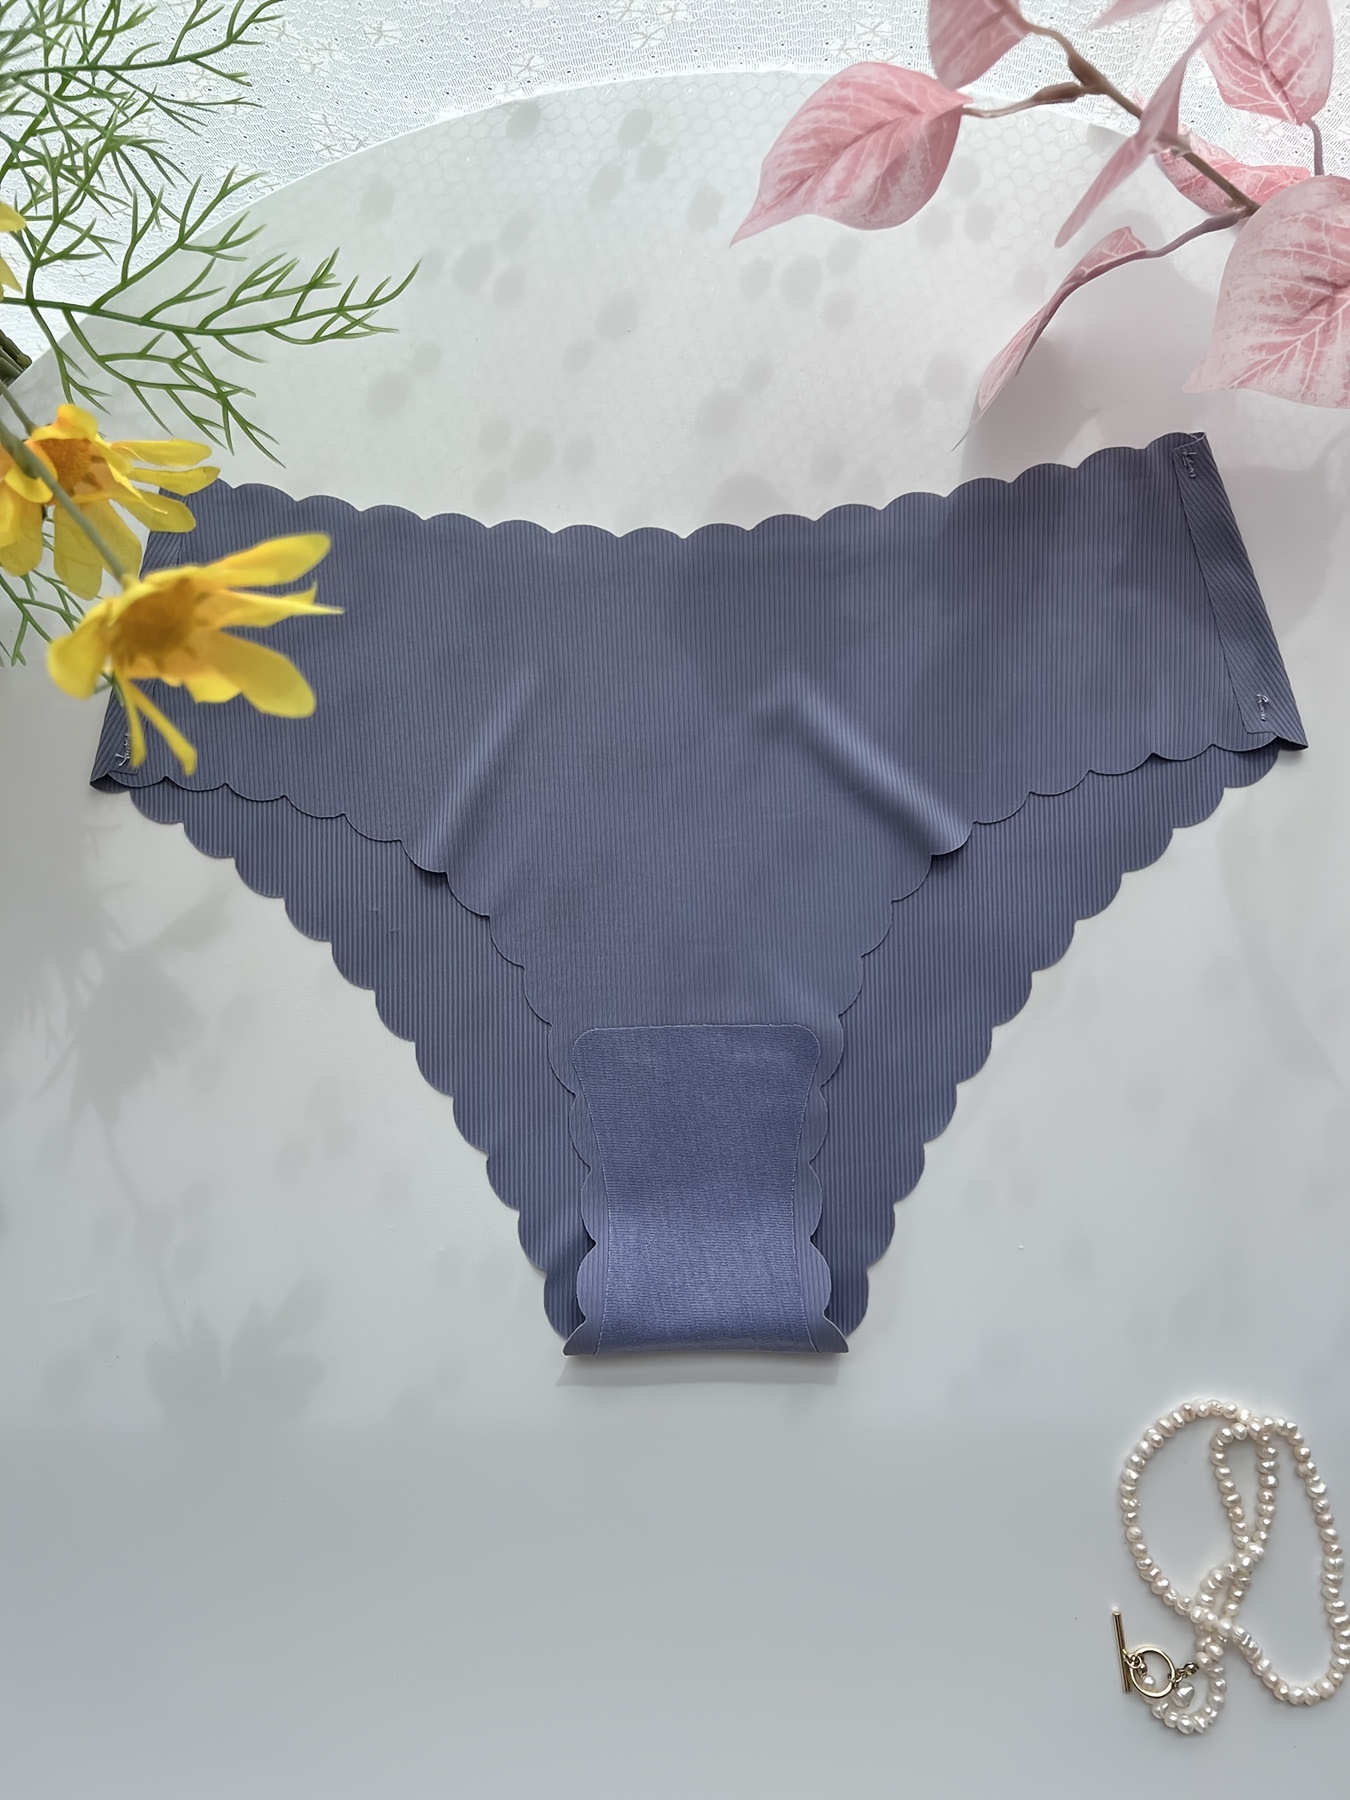 7pack Women's Seamless Cheeky High Waist No Show Panty Set Seamless  Underwear Briefs